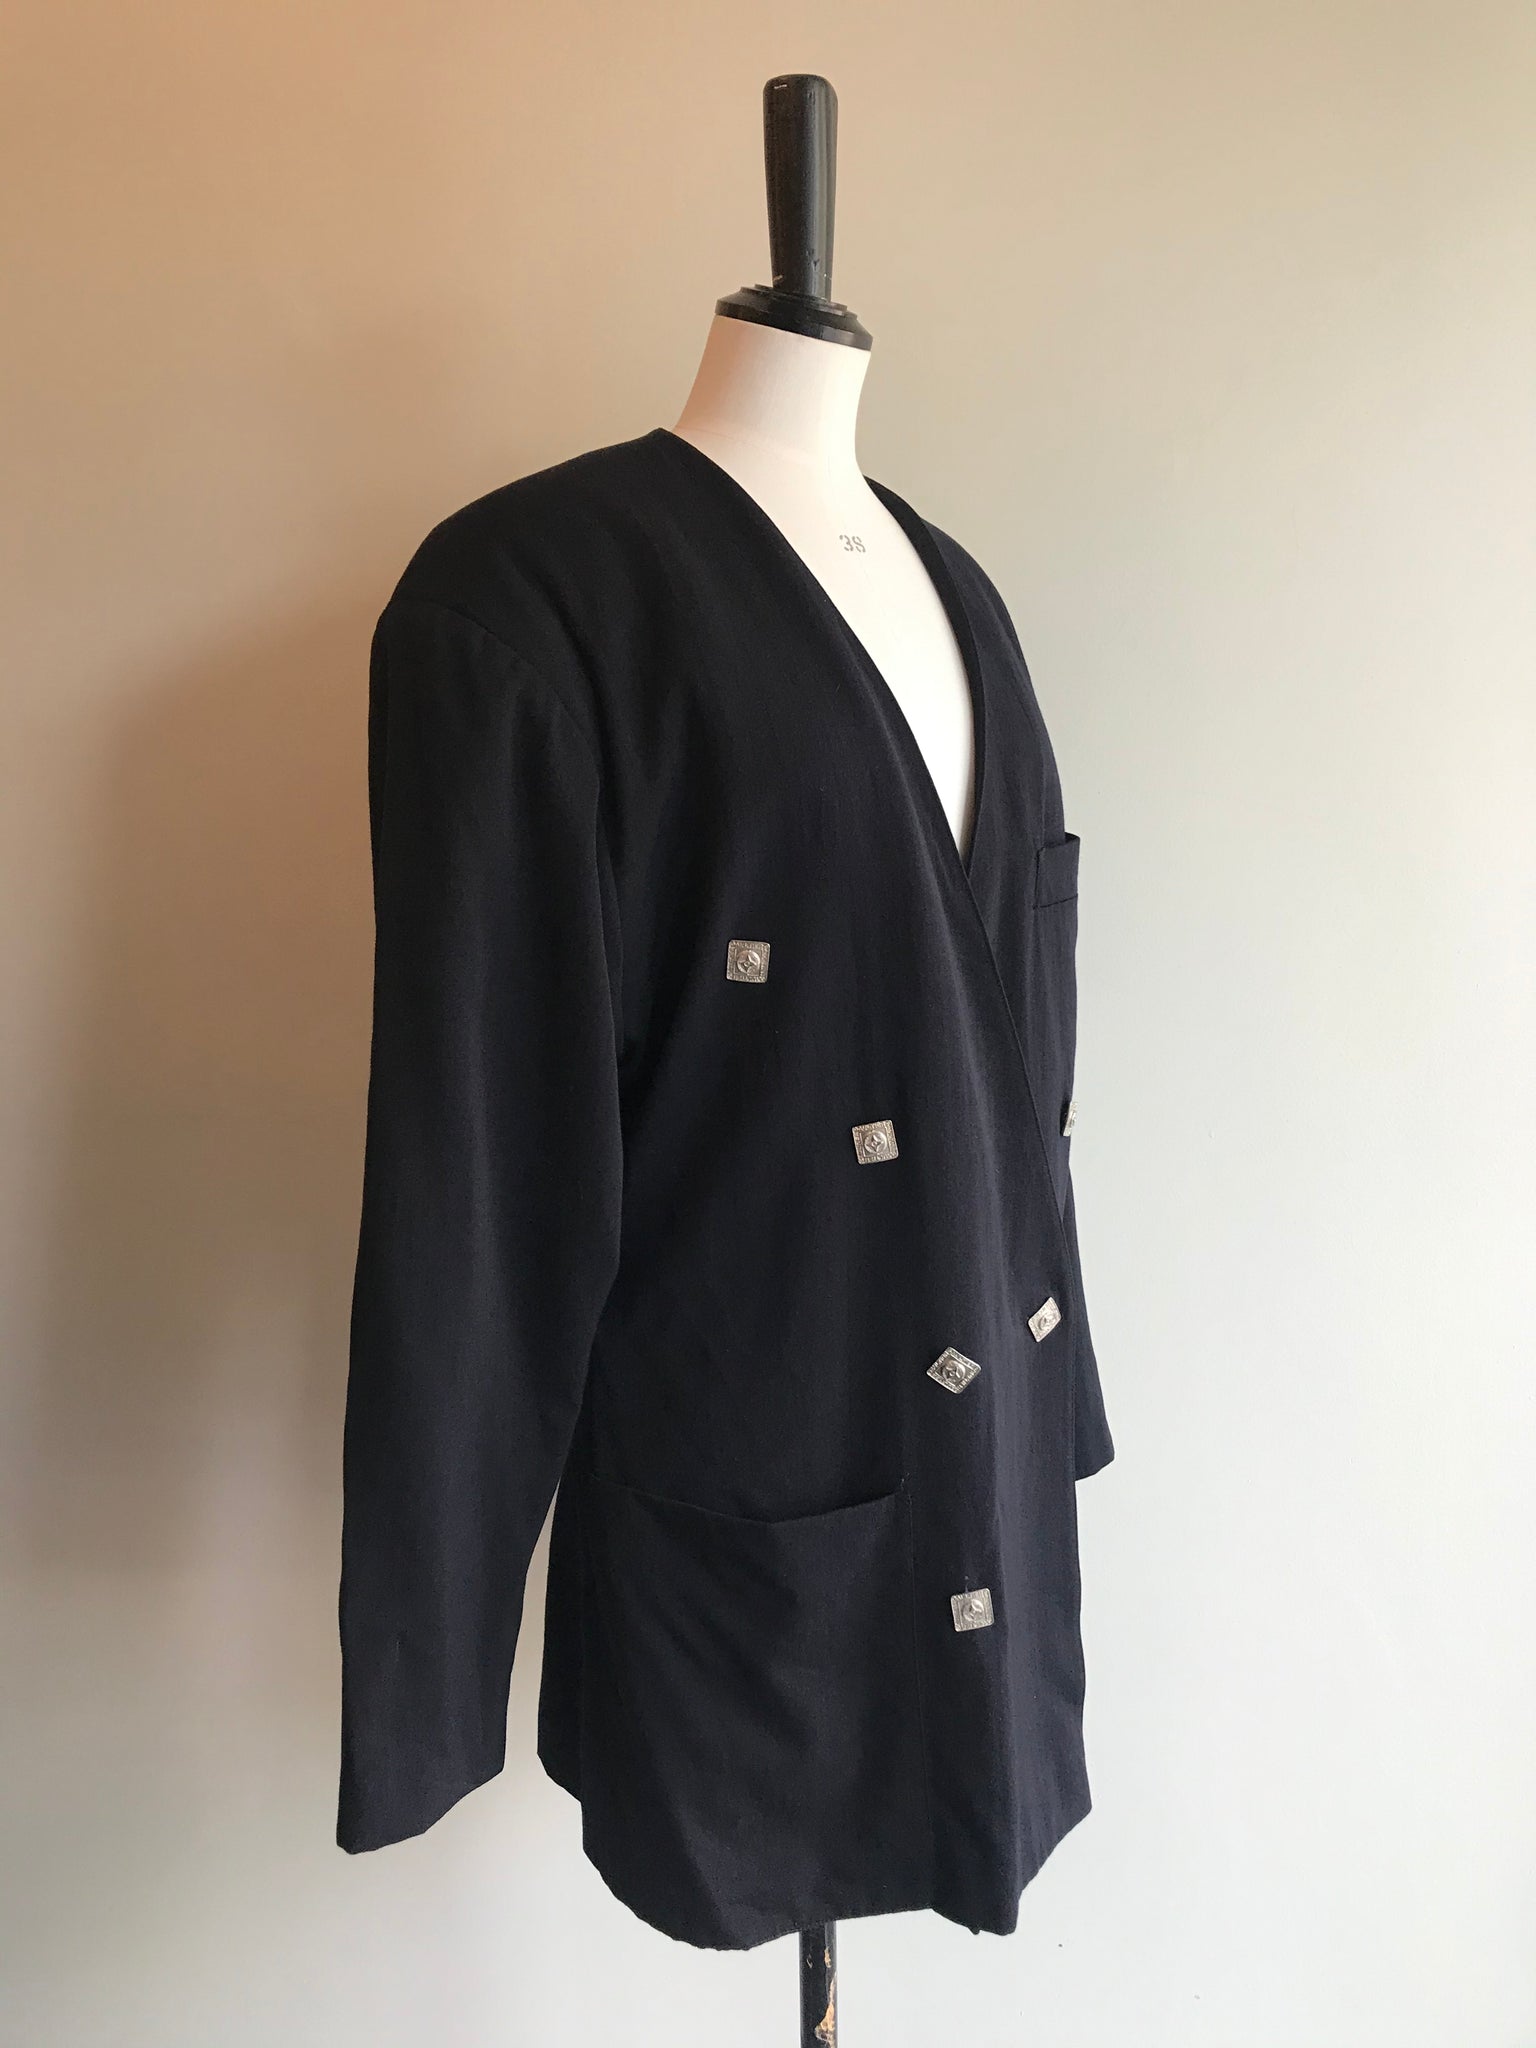 Isabella's Wardrobe Jean Paul Gaultier Vintage 1980's Wool Jacket.